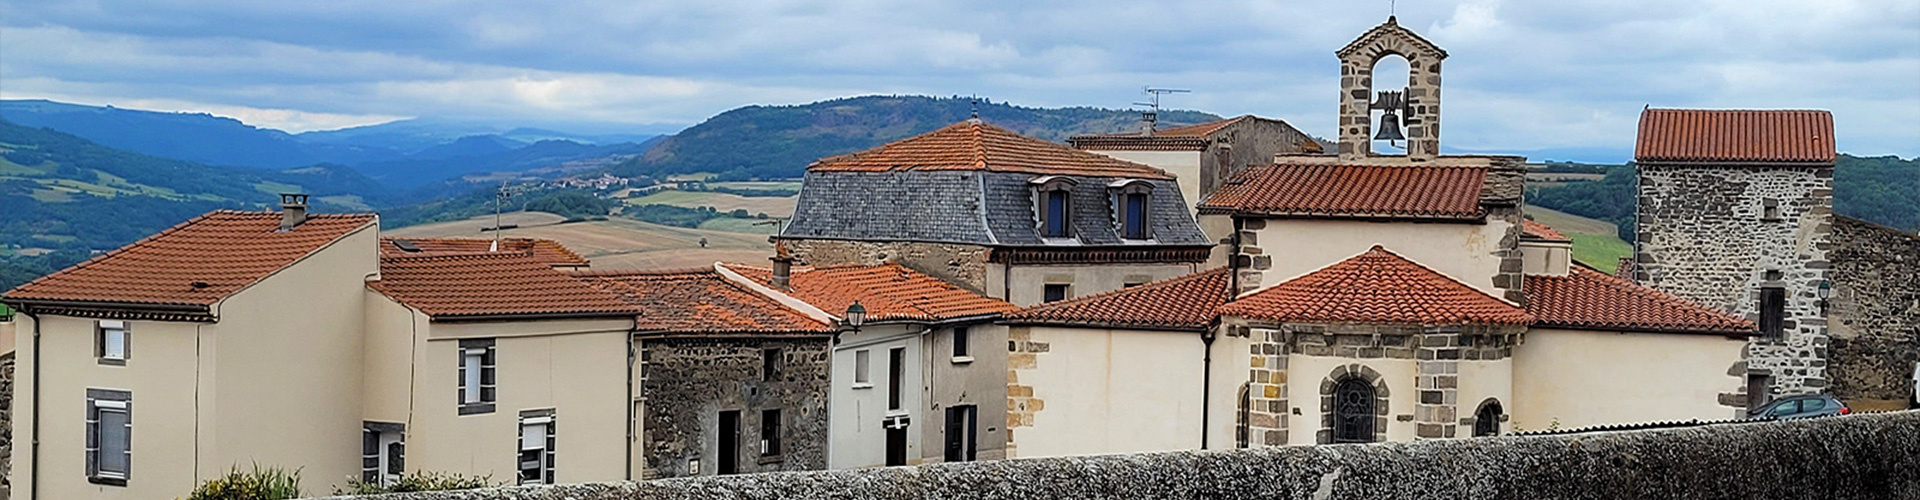 Villages musées Gite Issoire 63